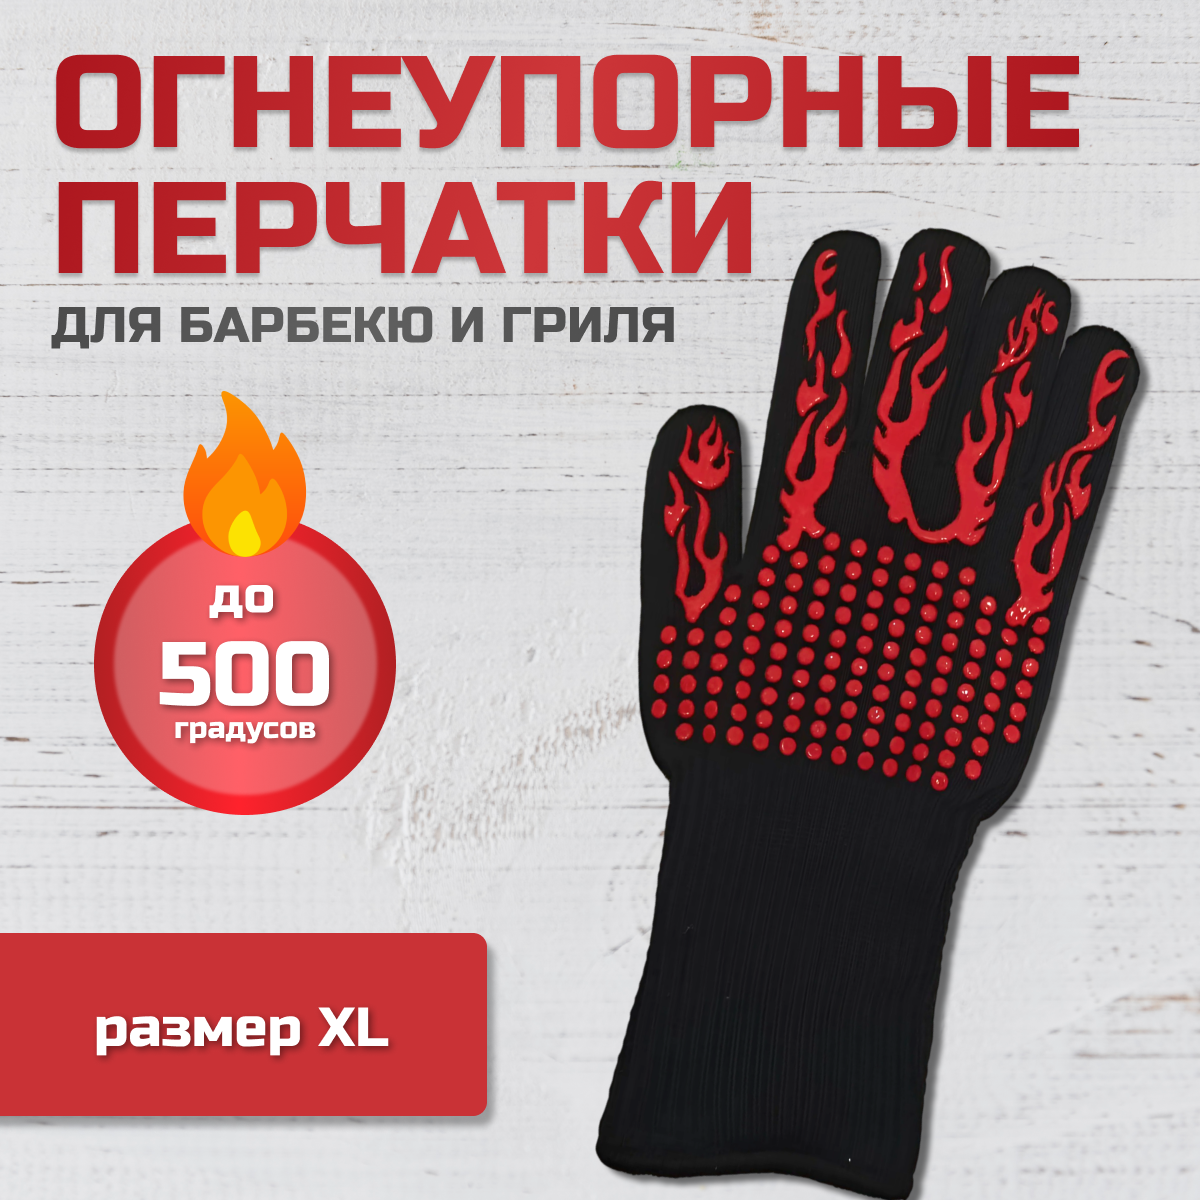 Огнеупорные жаропрочные перчатки для гриля барбекю мангала духовки 1 шт.